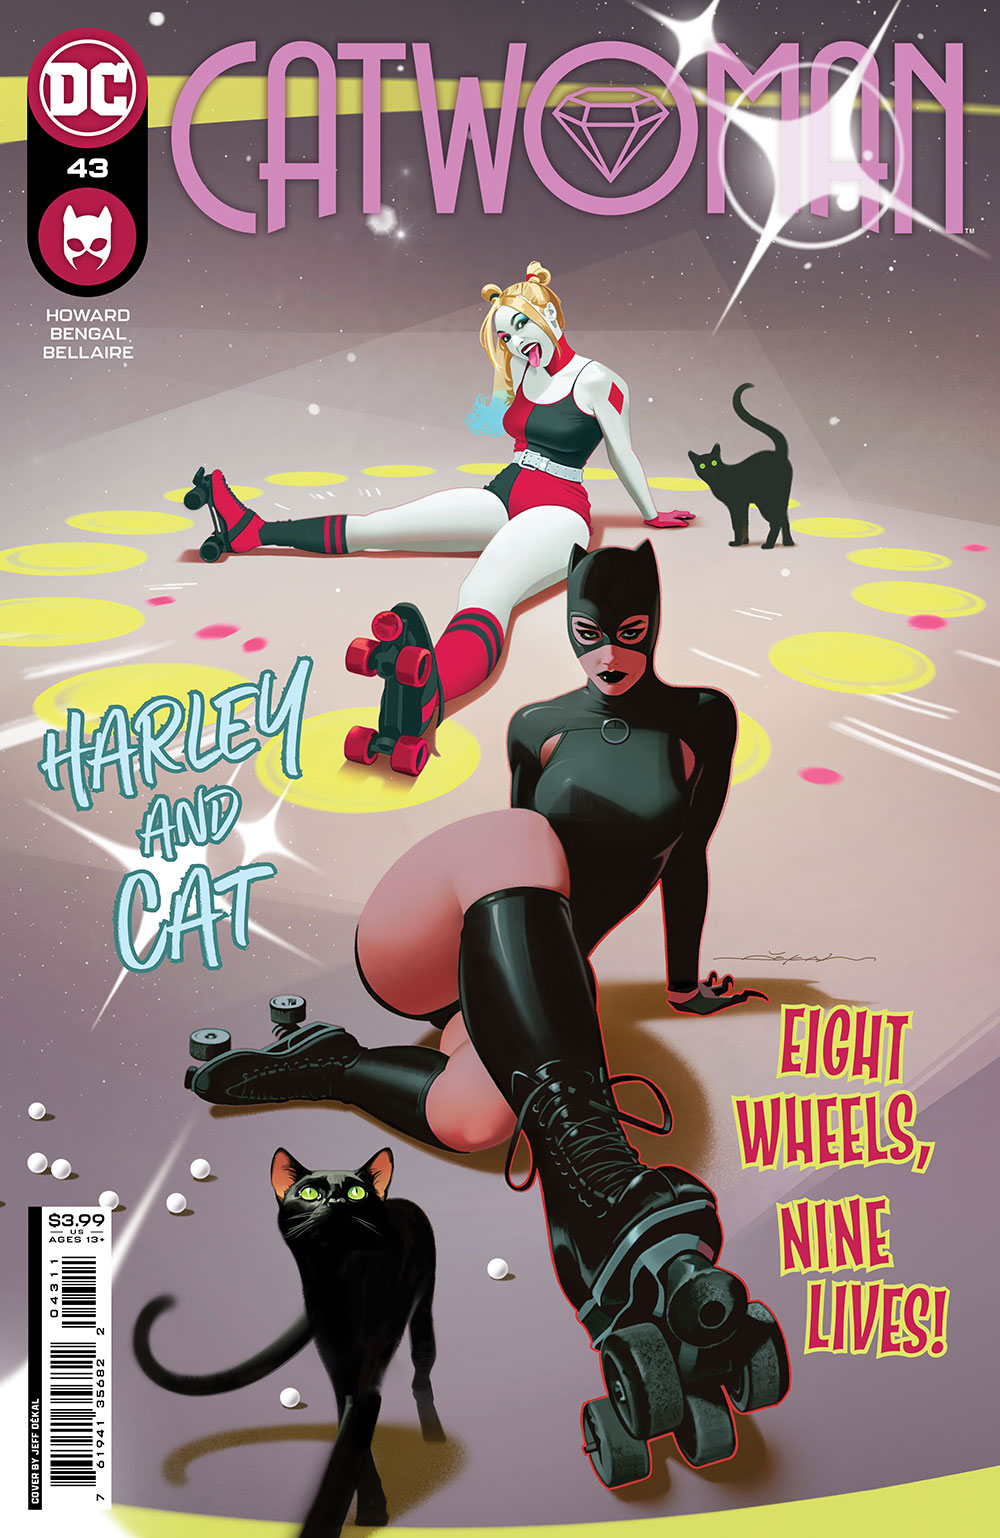 Catwoman #43 Cover A Jeff Dekal (2018)